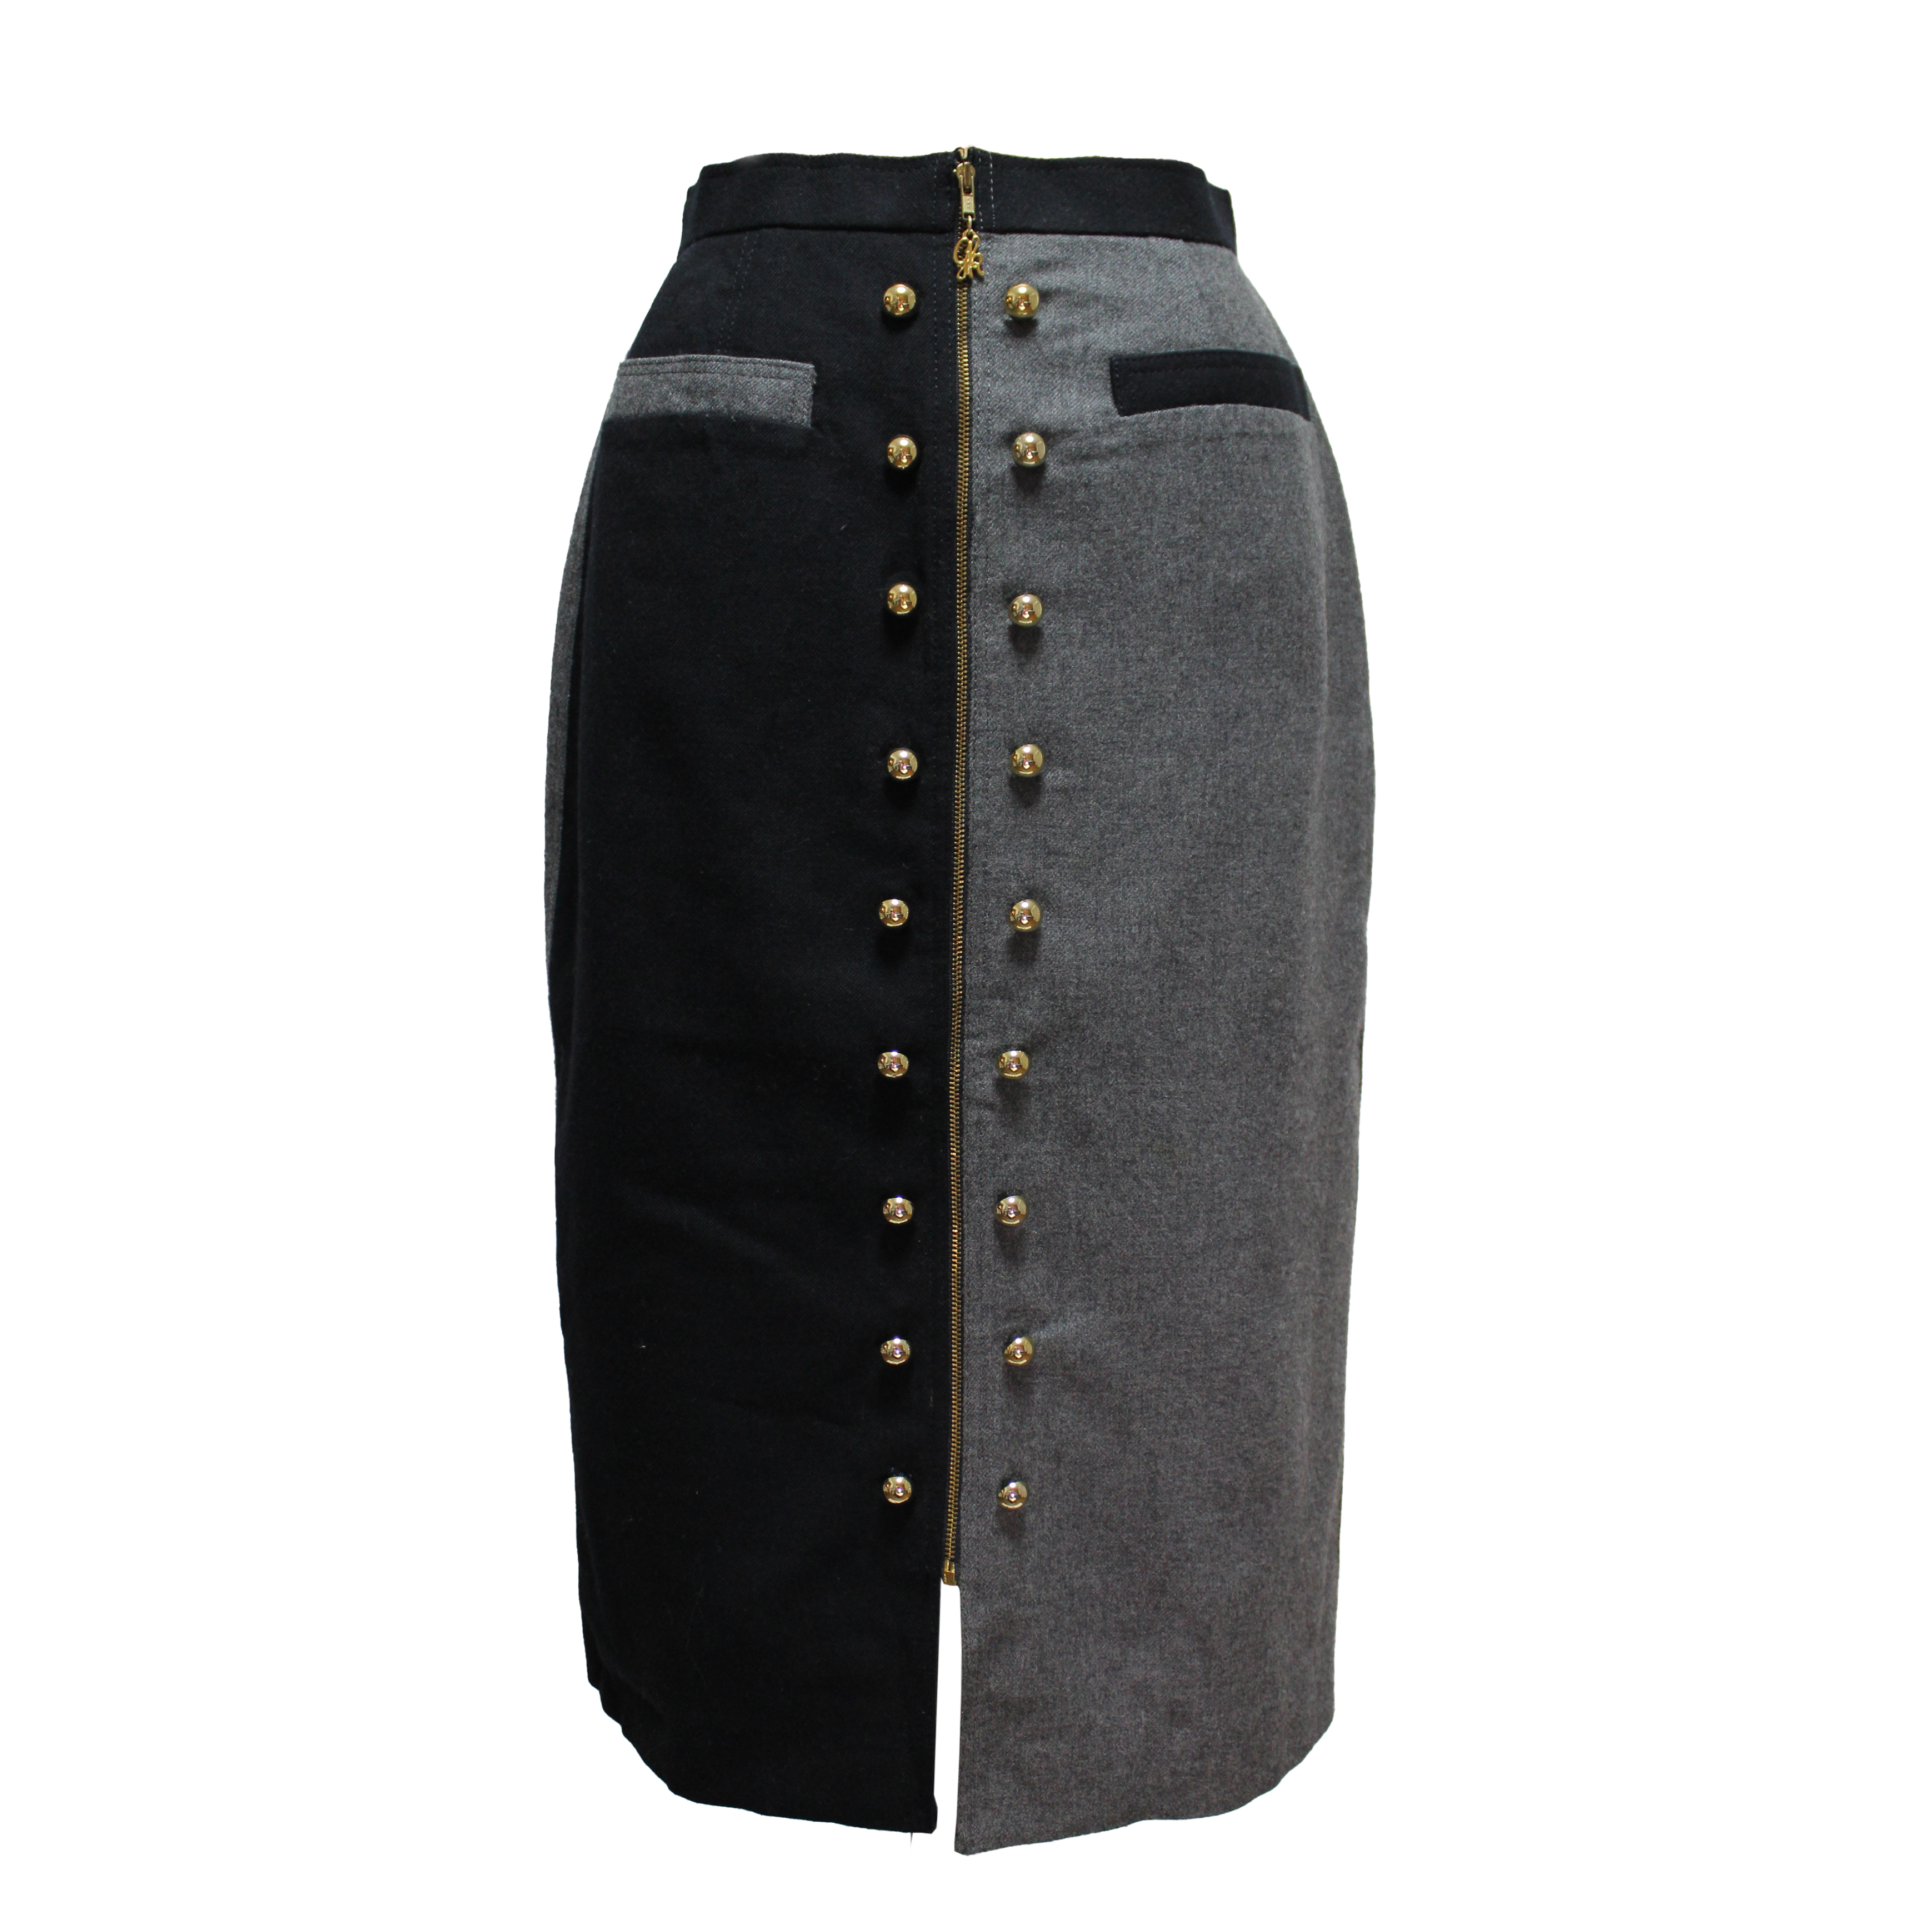 ビンテージ伊太利屋バイカラーロングスカート/Vintage Italian Bicolor Long Skirt